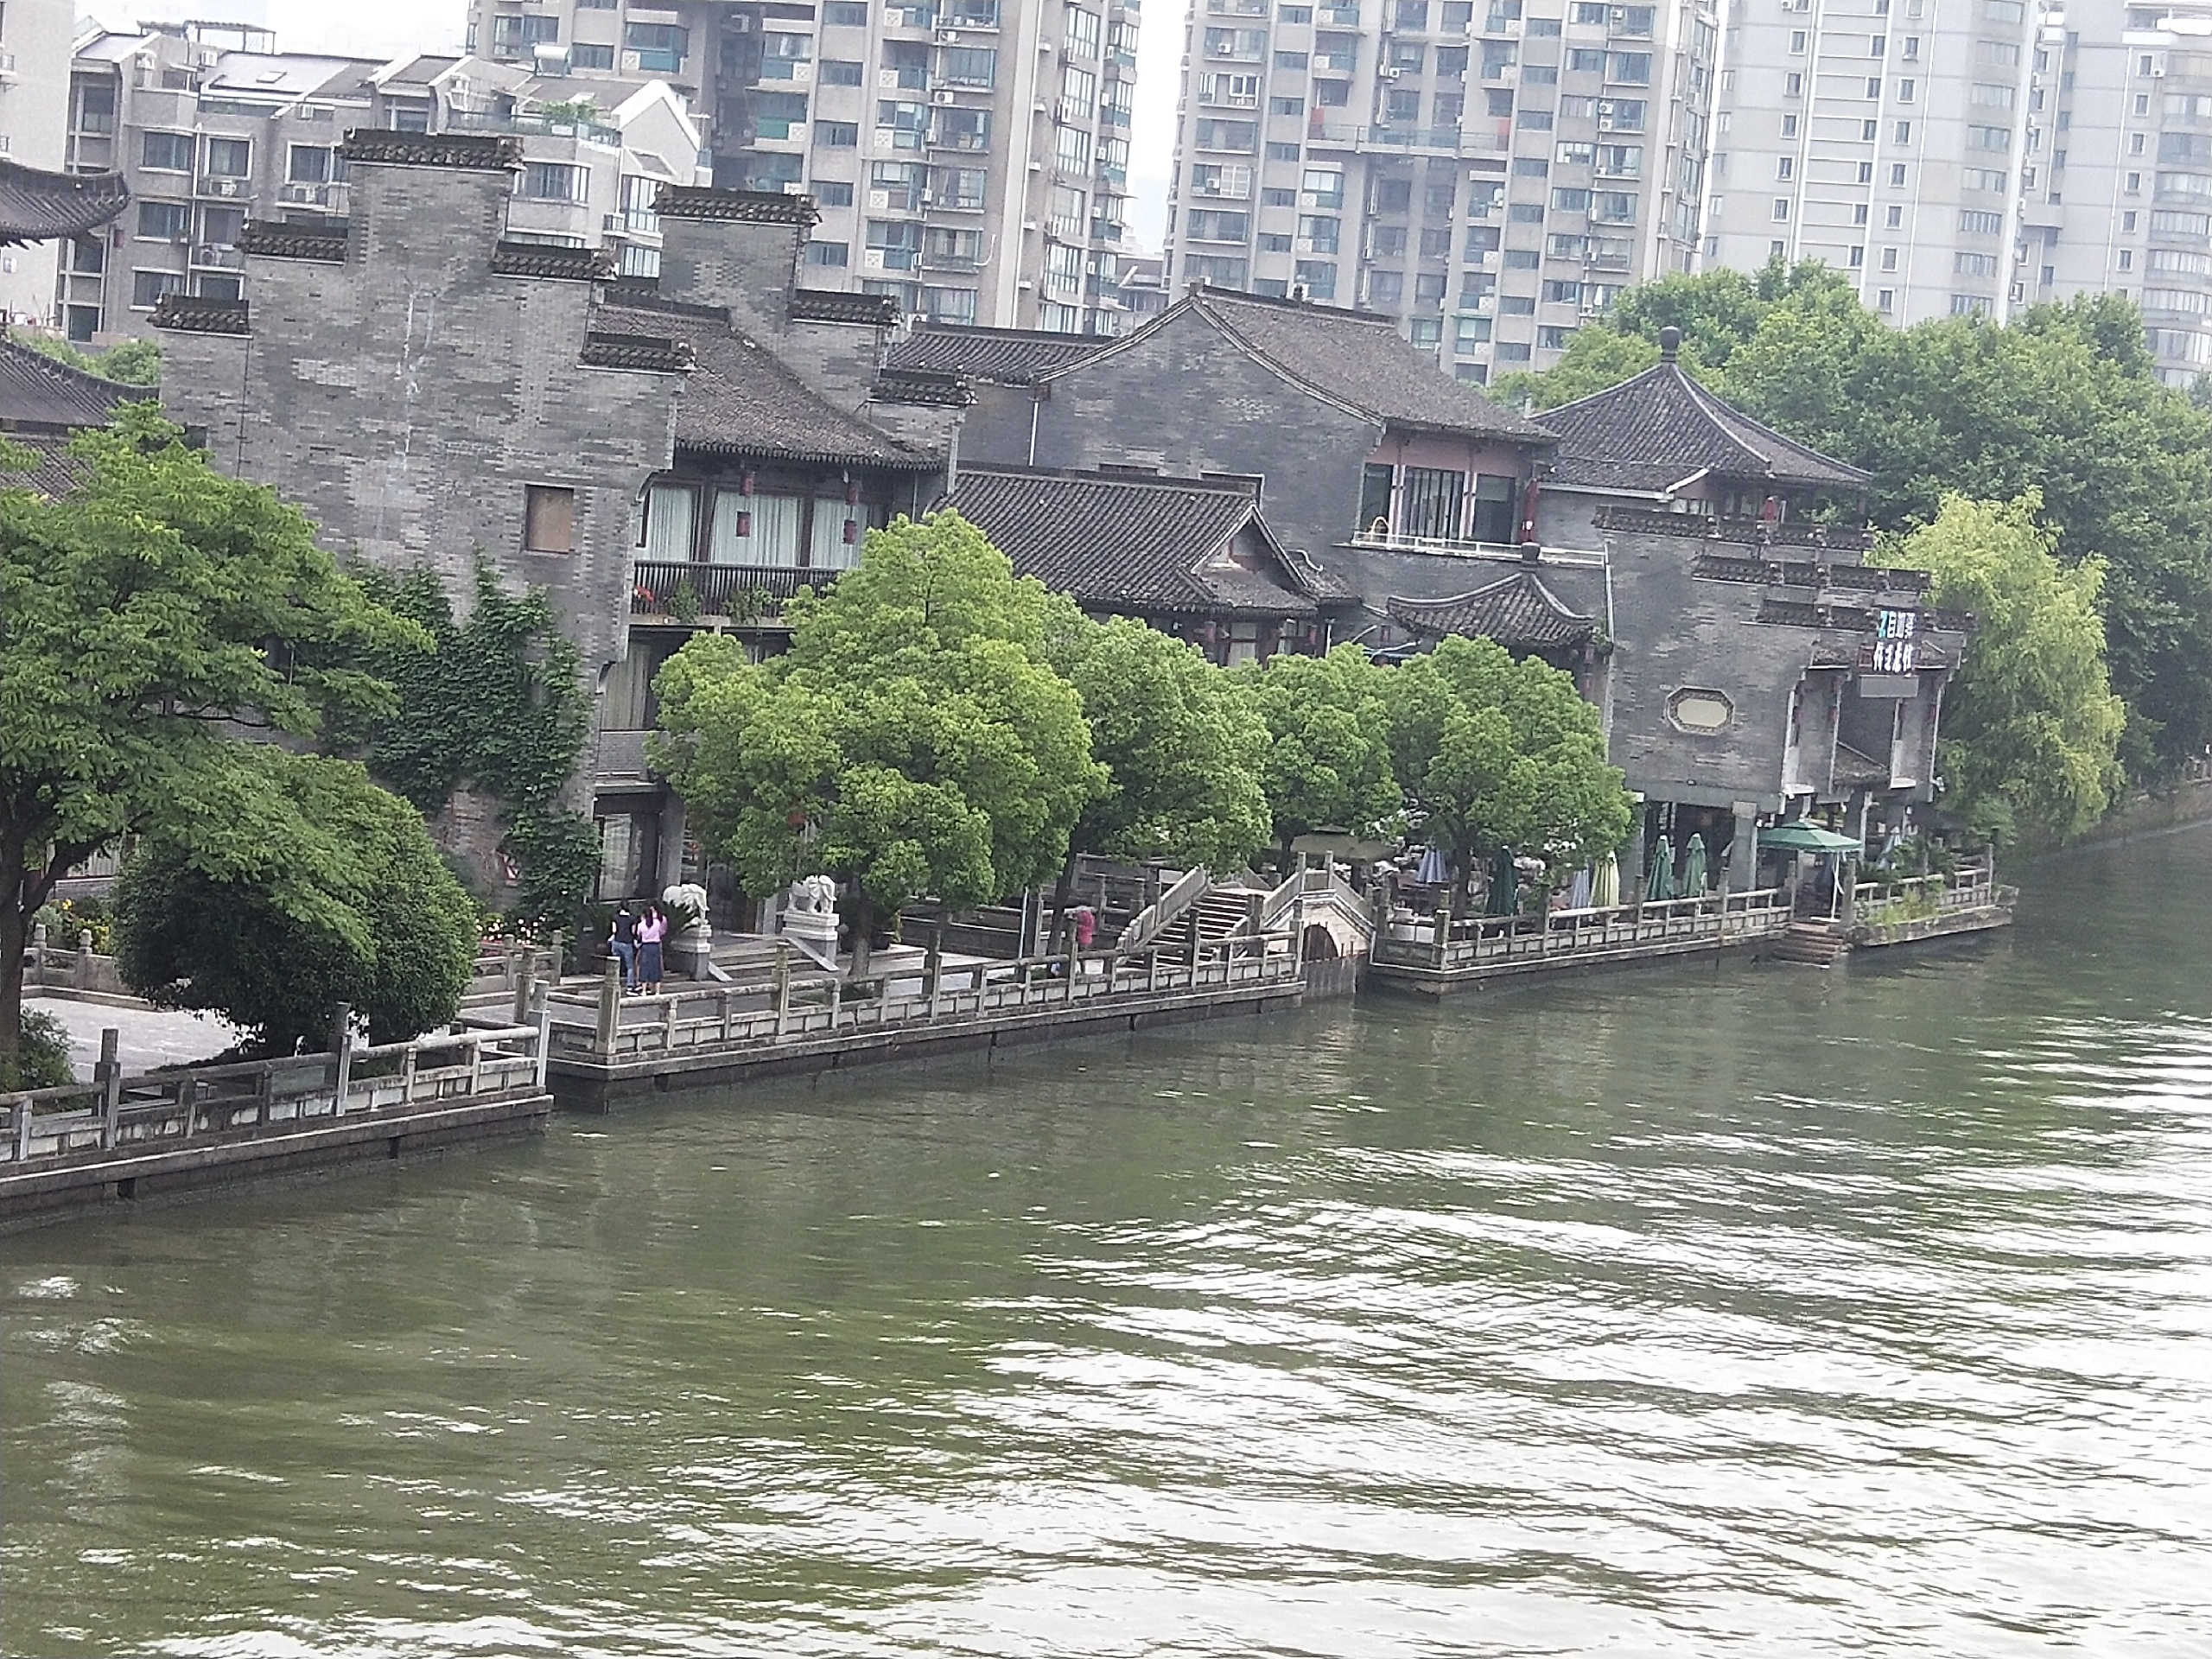 京杭大运河这个地方，真是很适合休闲地走走坐坐